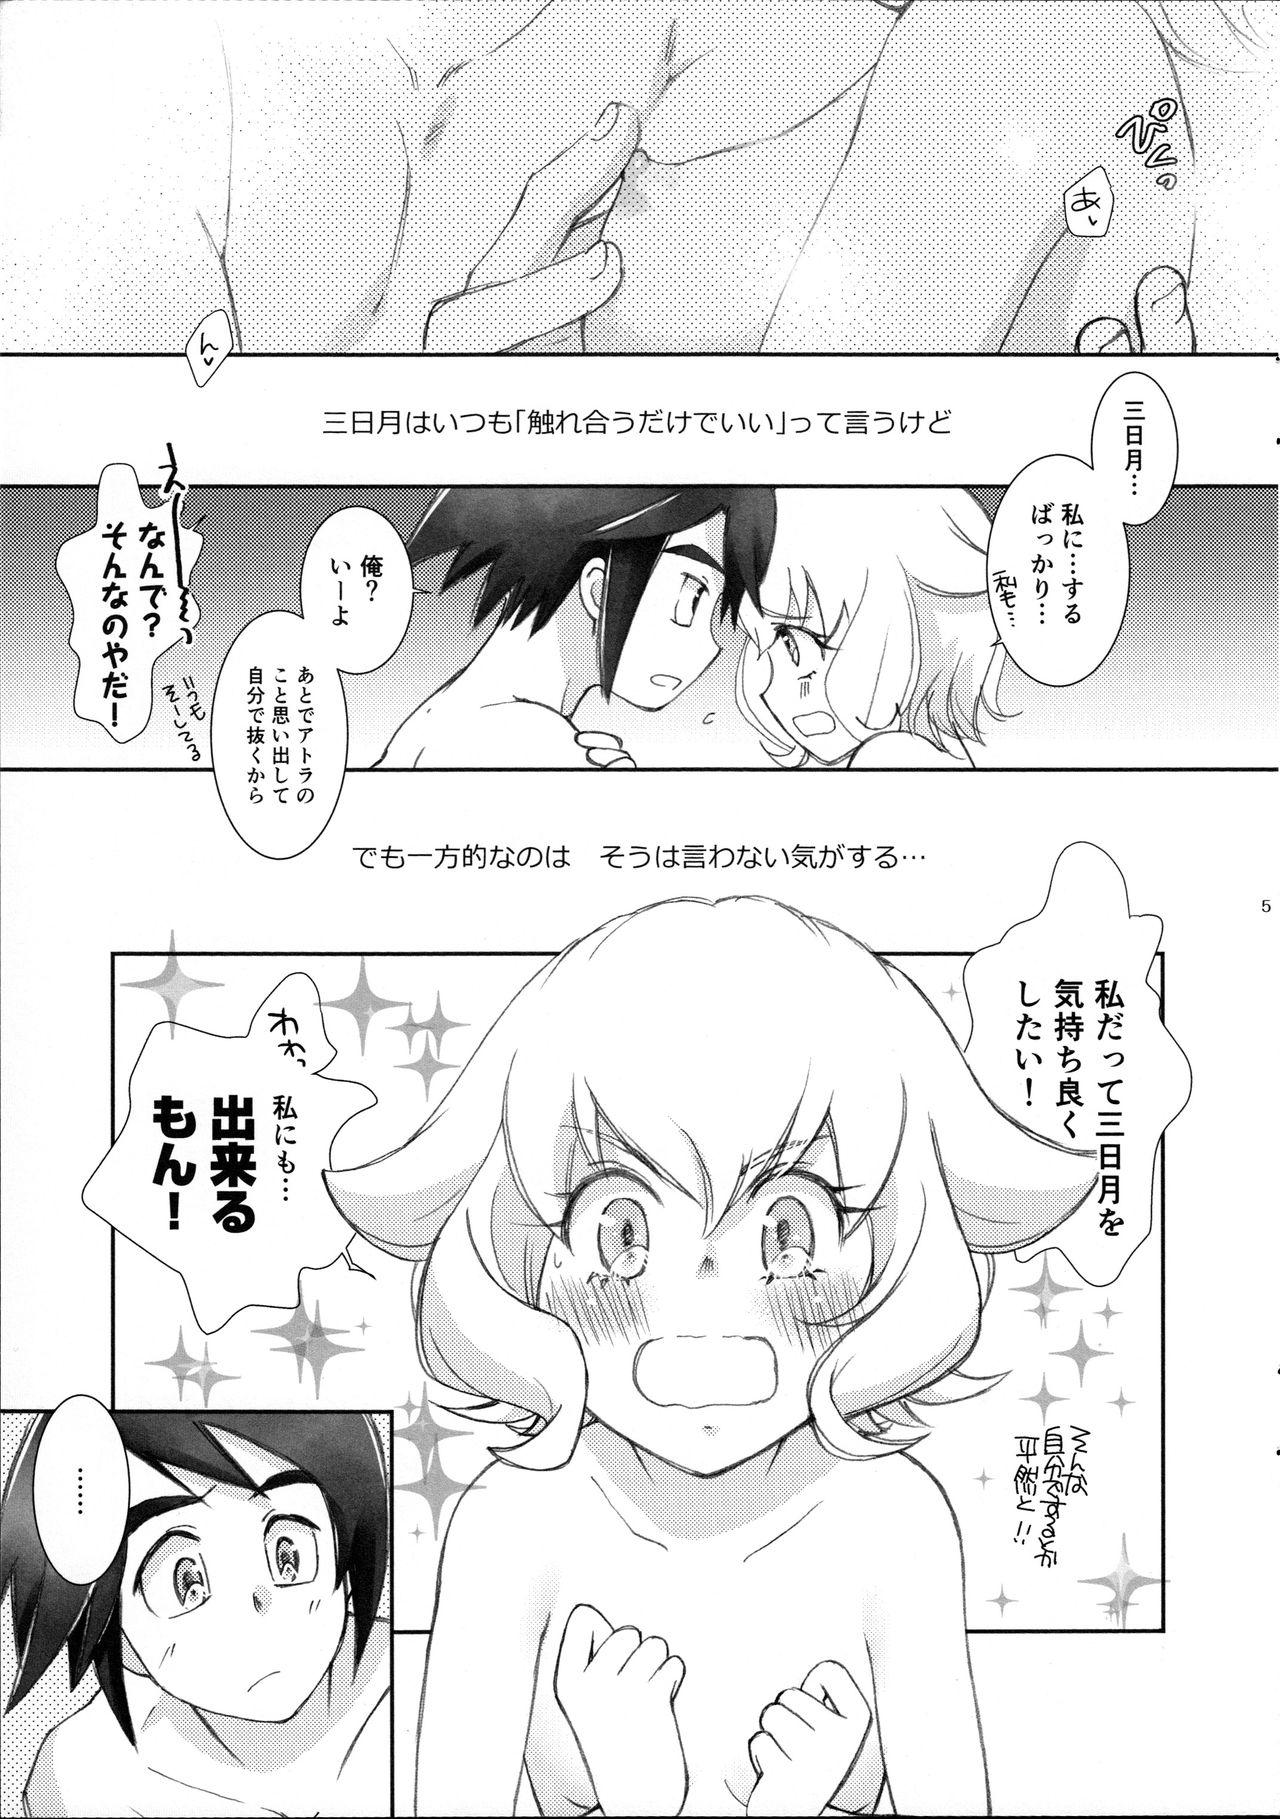 Caseiro Mikazuki wa Itsumo Saigomade Shinai - Mobile suit gundam tekketsu no orphans Great Fuck - Page 4